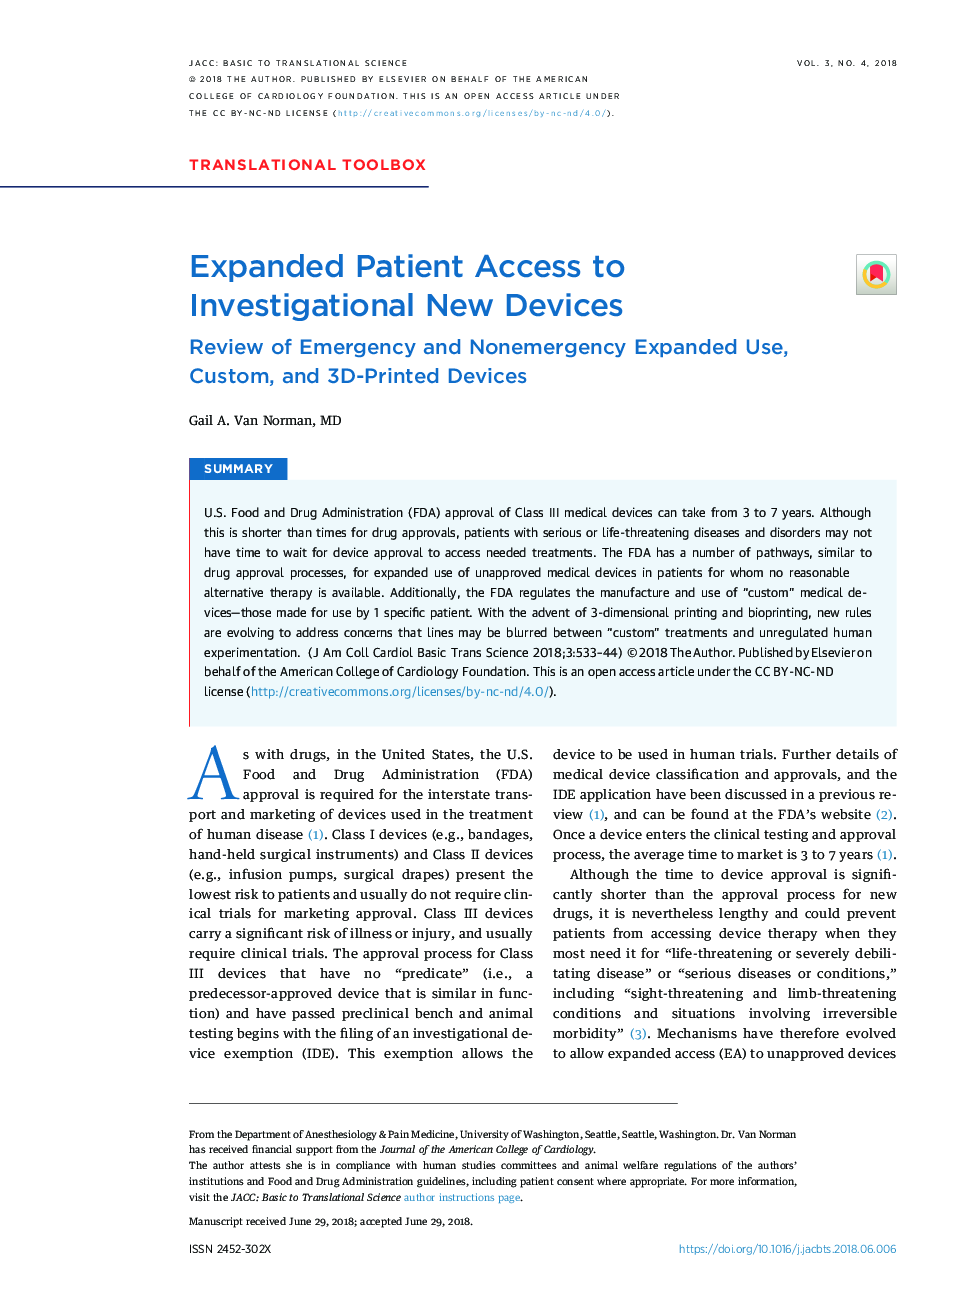 دسترسی گسترده بیماران به دستگاه های جدید تحقیقاتی